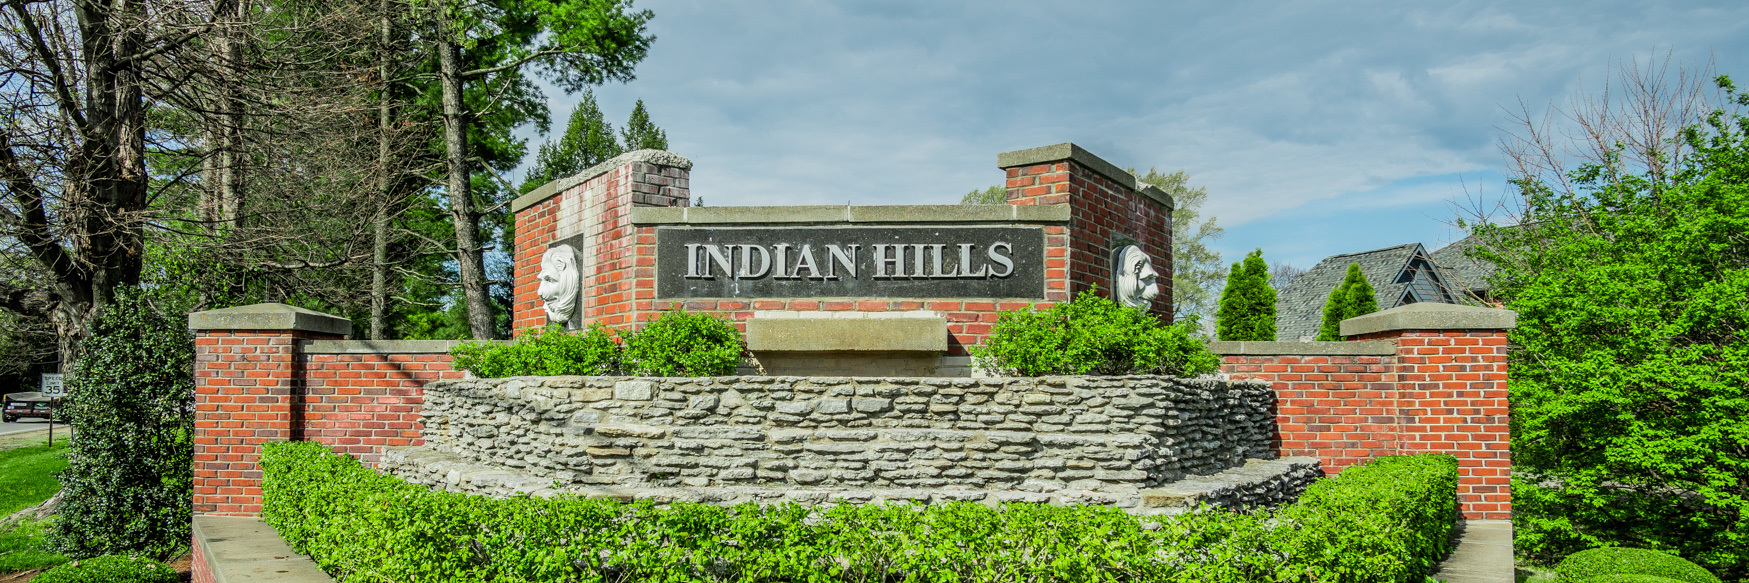 Indian Hills neighborhood entrance